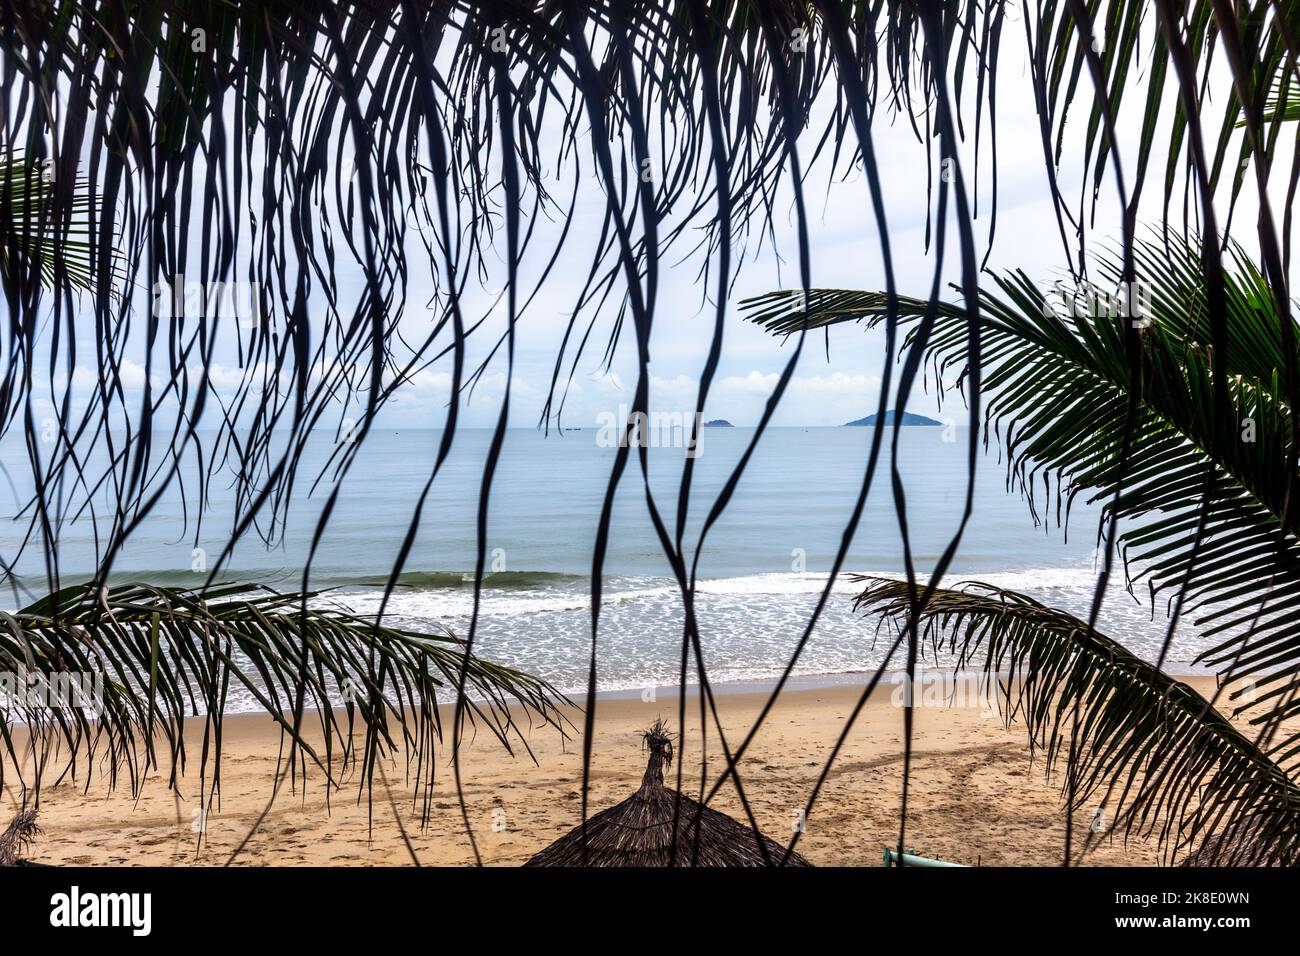 Vue en hauteur sur l'océan avec cabanas de plage et empreintes de pieds dans le sable qui donnent sur une petite fenêtre de palmiers. Banque D'Images